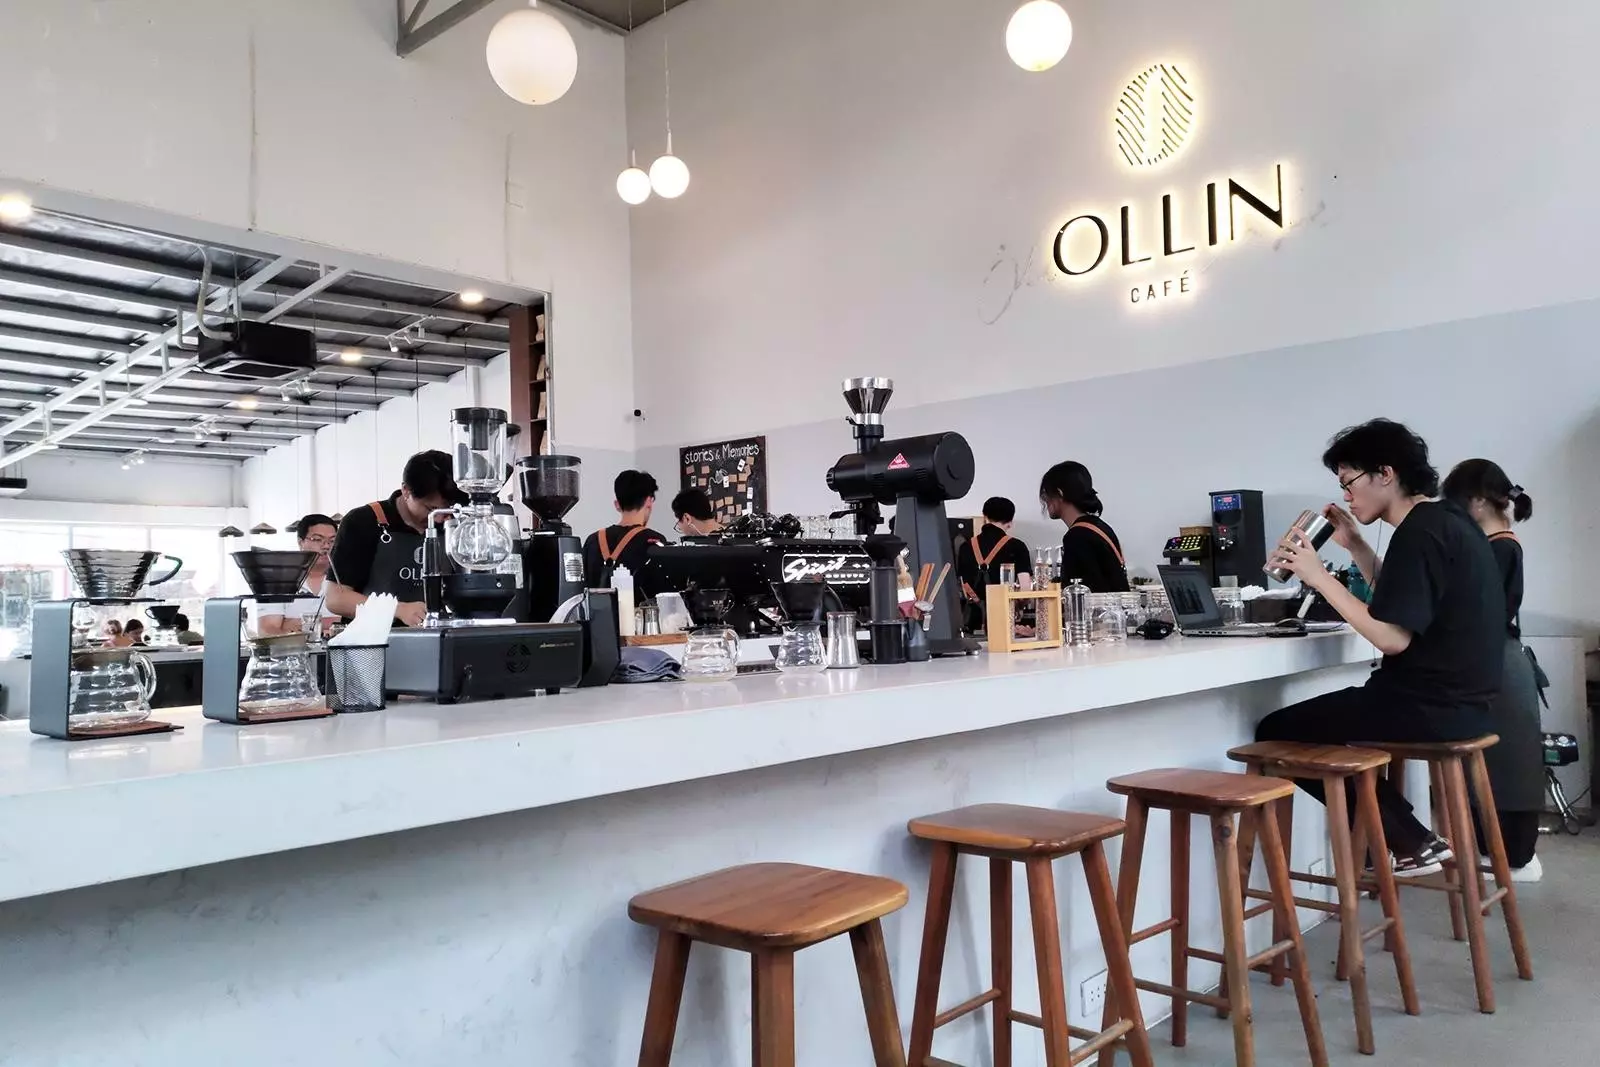 Ollin Café là một quán cà phê hiện đại và sáng tạo, với không gian thiết kế đẹp mắt, menu đa dạng và phong cách phục vụ chuyên nghiệp, mang đến cho khách hàng trải nghiệm thưởng thức cà phê tuyệt vời và không gian thư giãn thú vị.